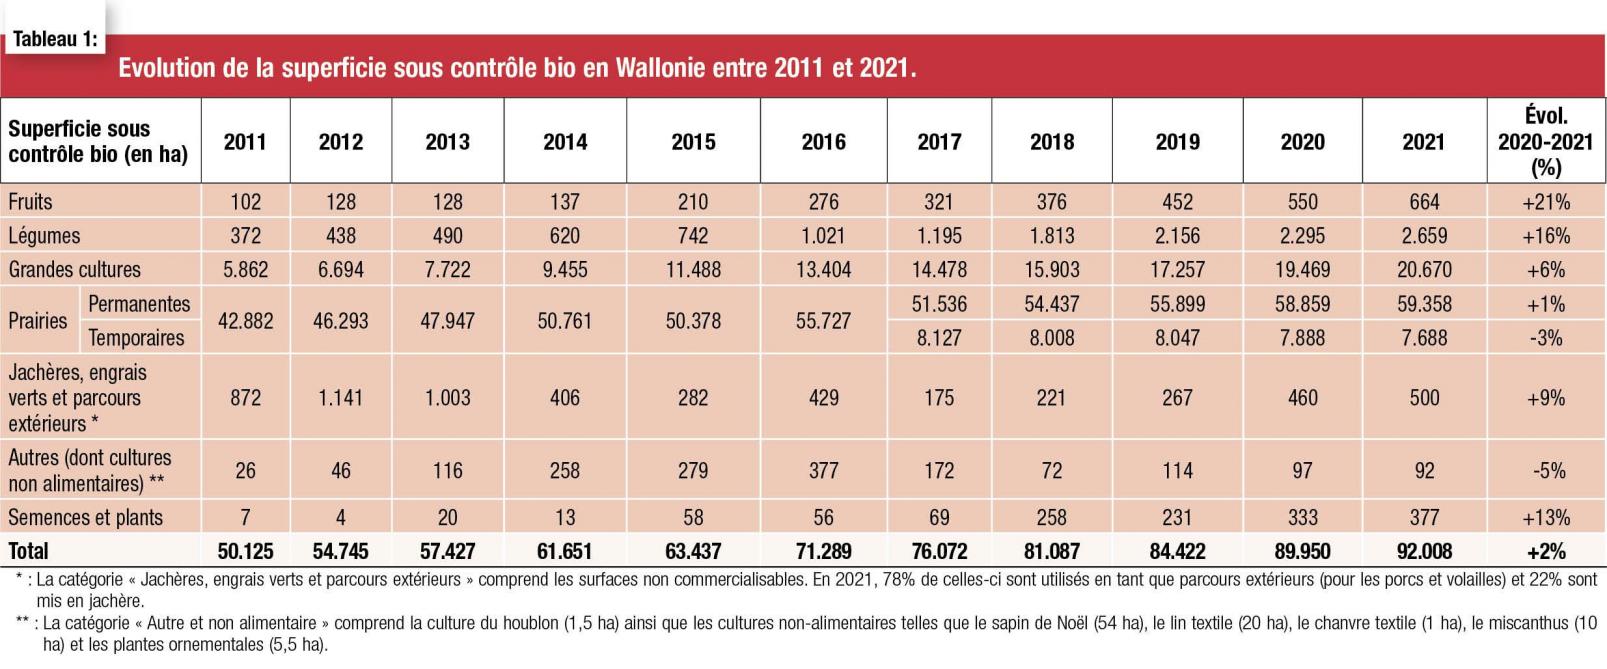 Evolution de la superficie sous contrôle bio en Wallonie entre 2011 et 2021-